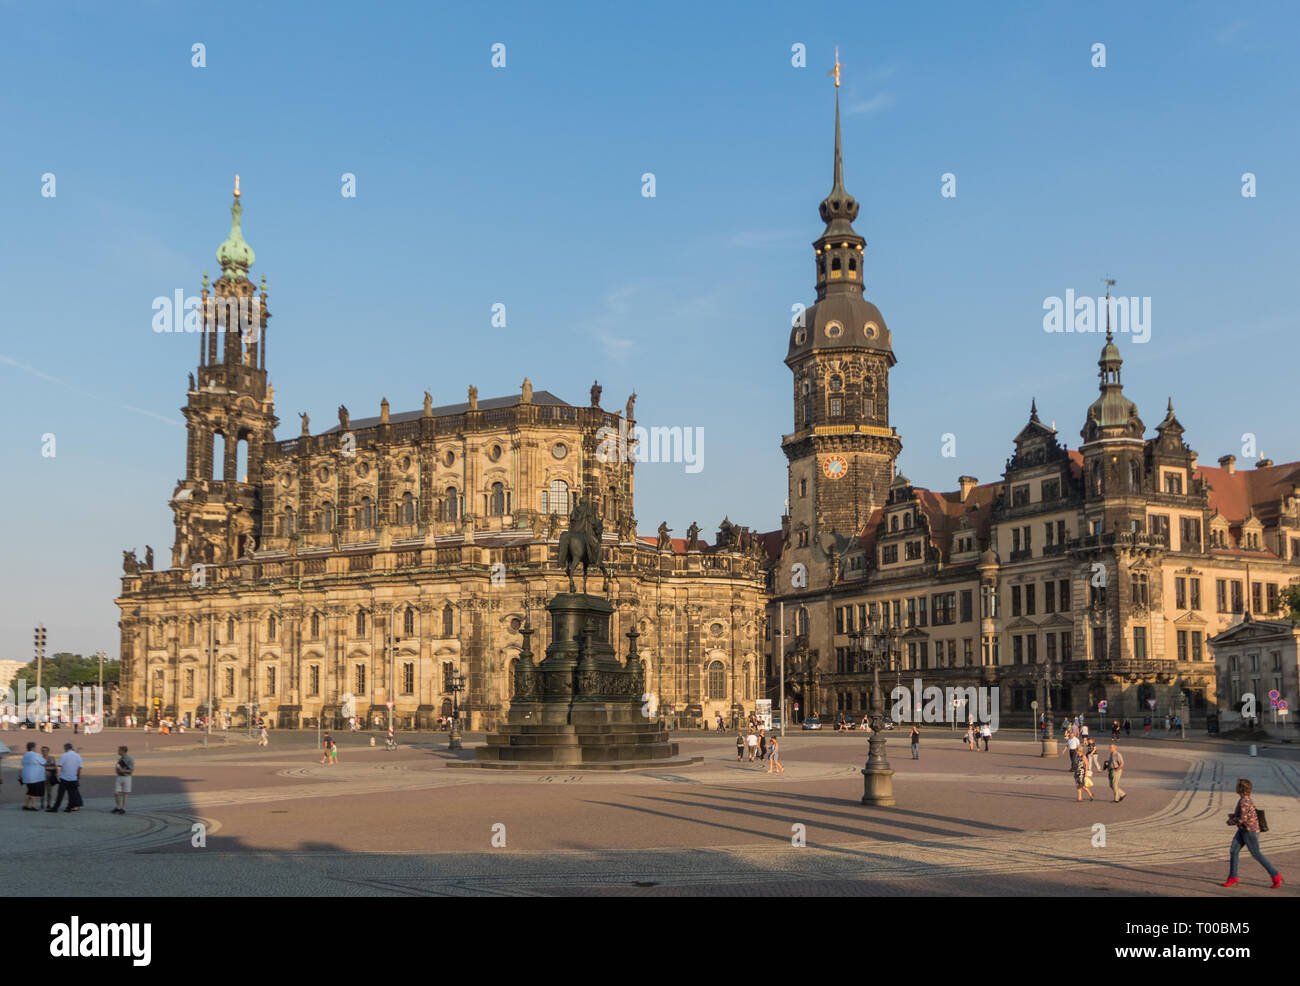 Dresde, Allemagne - l'une des villes le plus bombardé PENDANT LA SECONDE GUERRE MONDIALE, Dresde , a être reconstruit après 1945, et c'est maintenant un site du patrimoine mondial de l'Unesco Banque D'Images